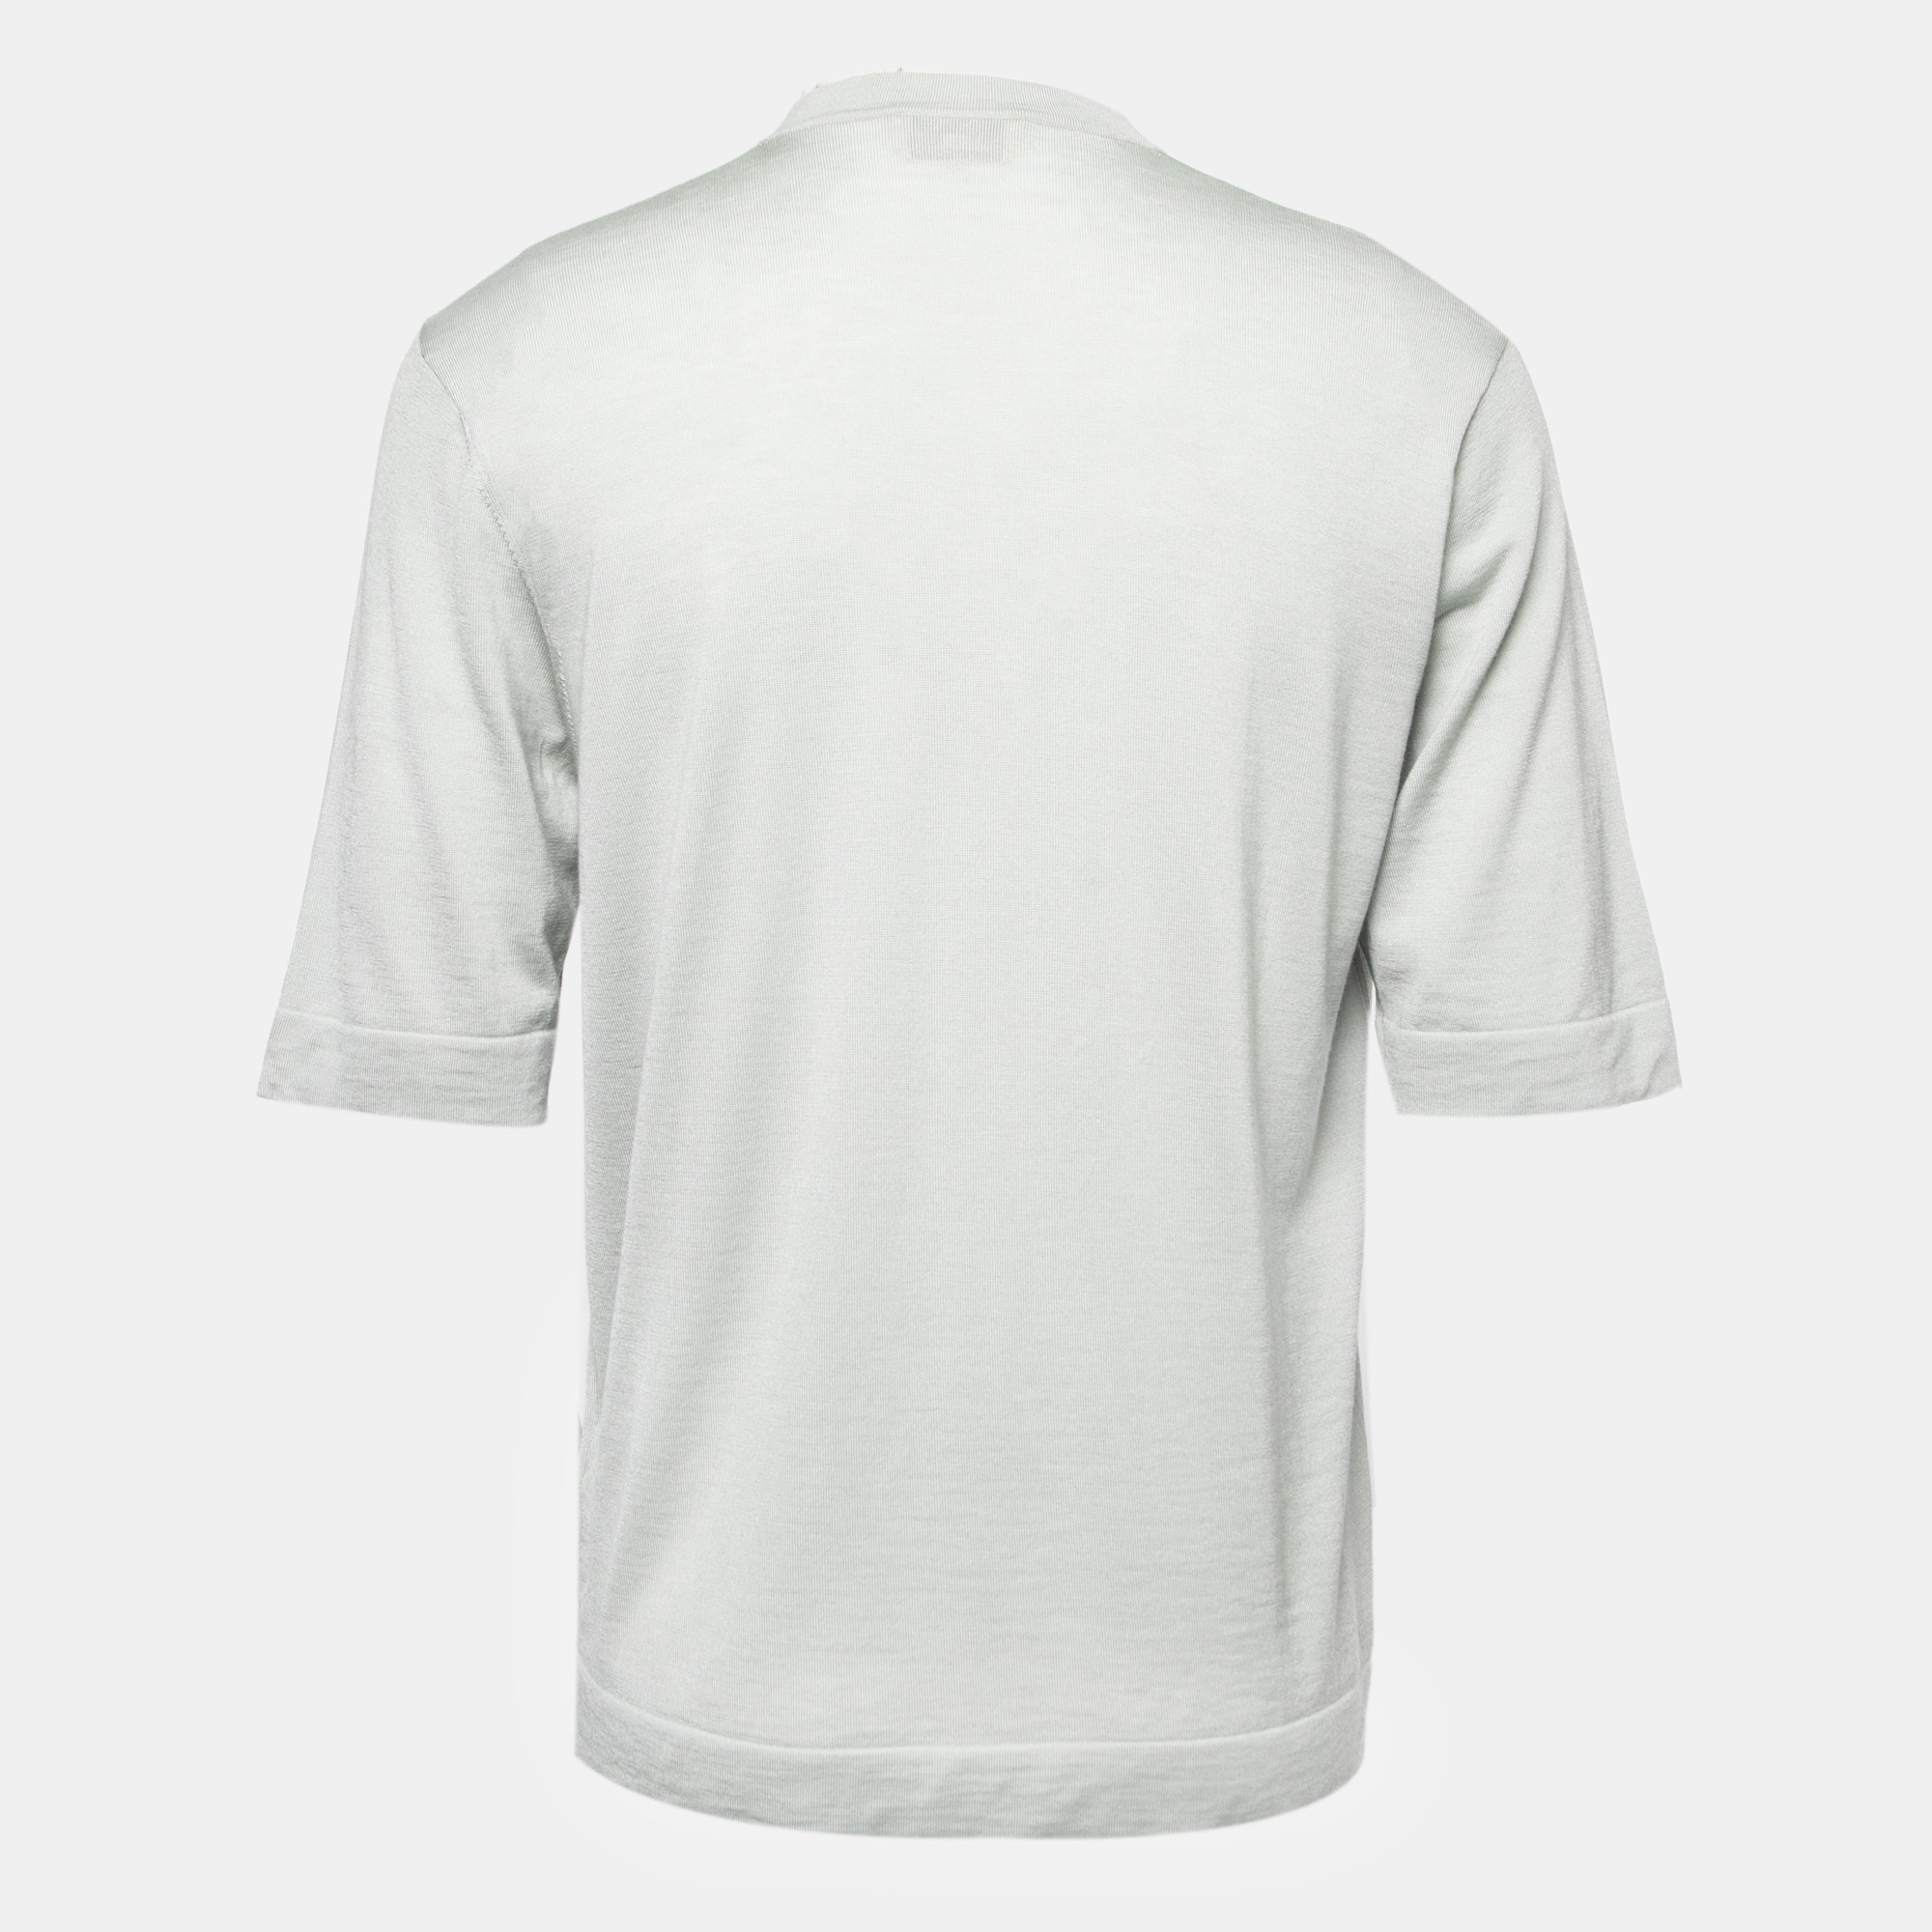 

Hermes Grey Patterned Cashmere Blend Knit T-Shirt